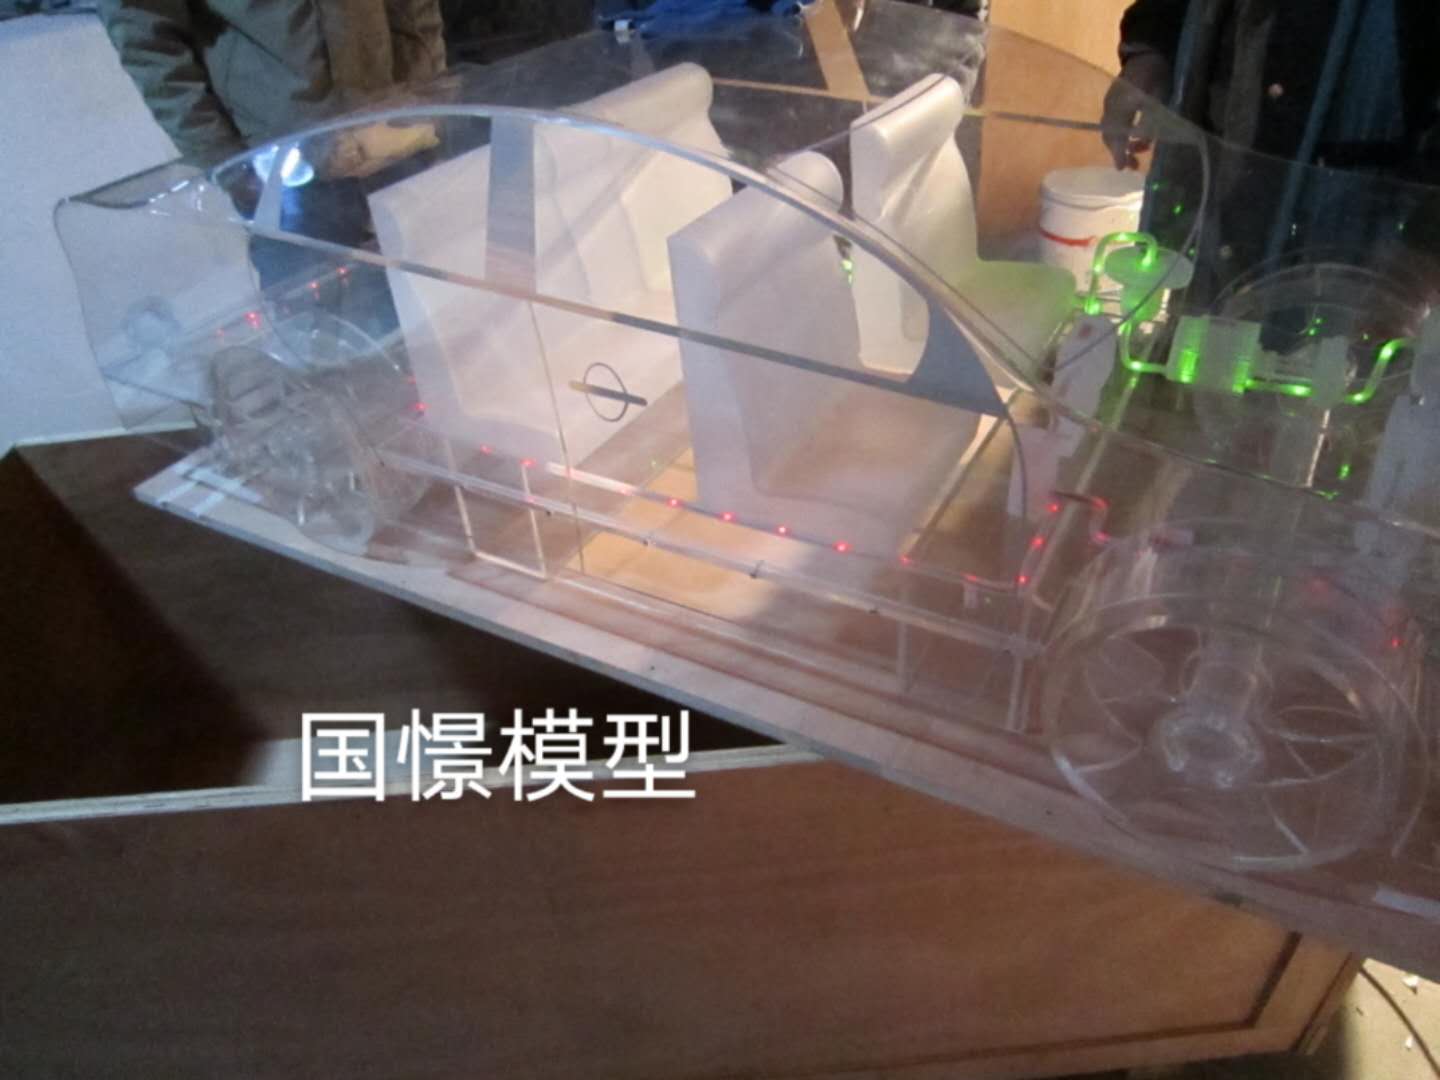 衡东县透明车模型